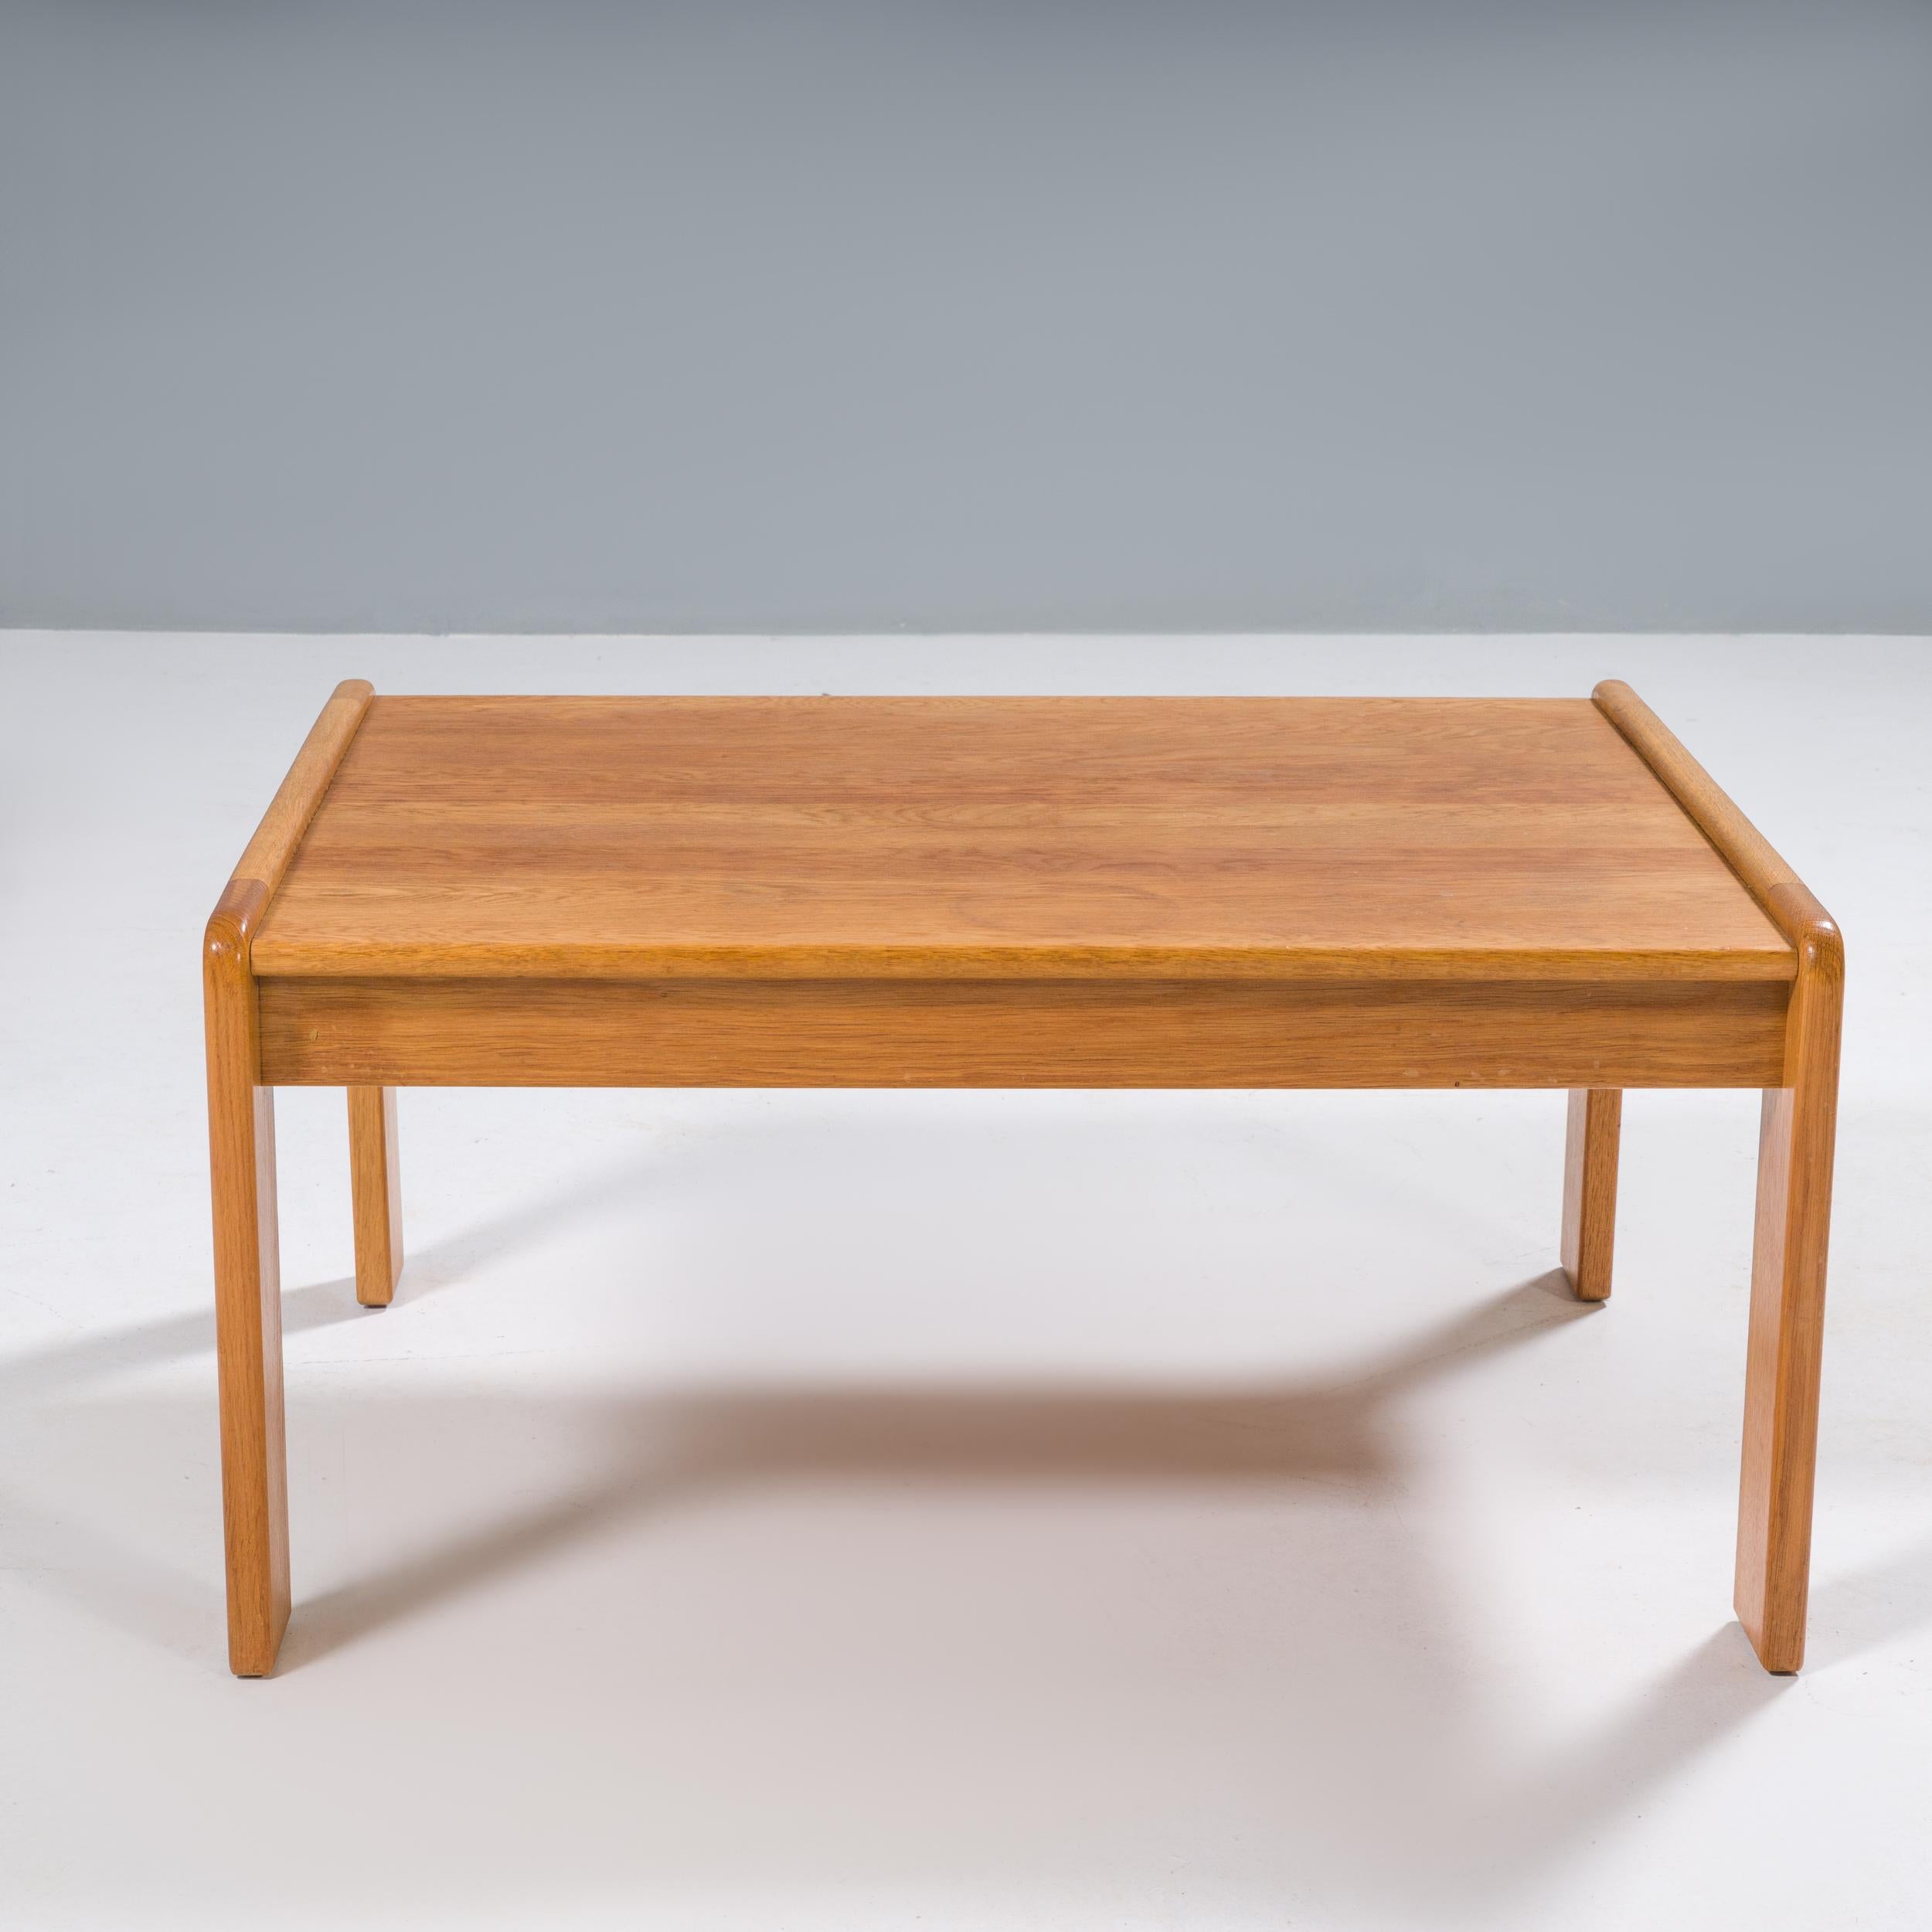 Yngve Ekström est l'une des figures les plus importantes de l'évolution du mouvement du modernisme scandinave et le cofondateur de la société de design de meubles Swedese.

Cette table basse est construite en bois de pin et présente des lignes